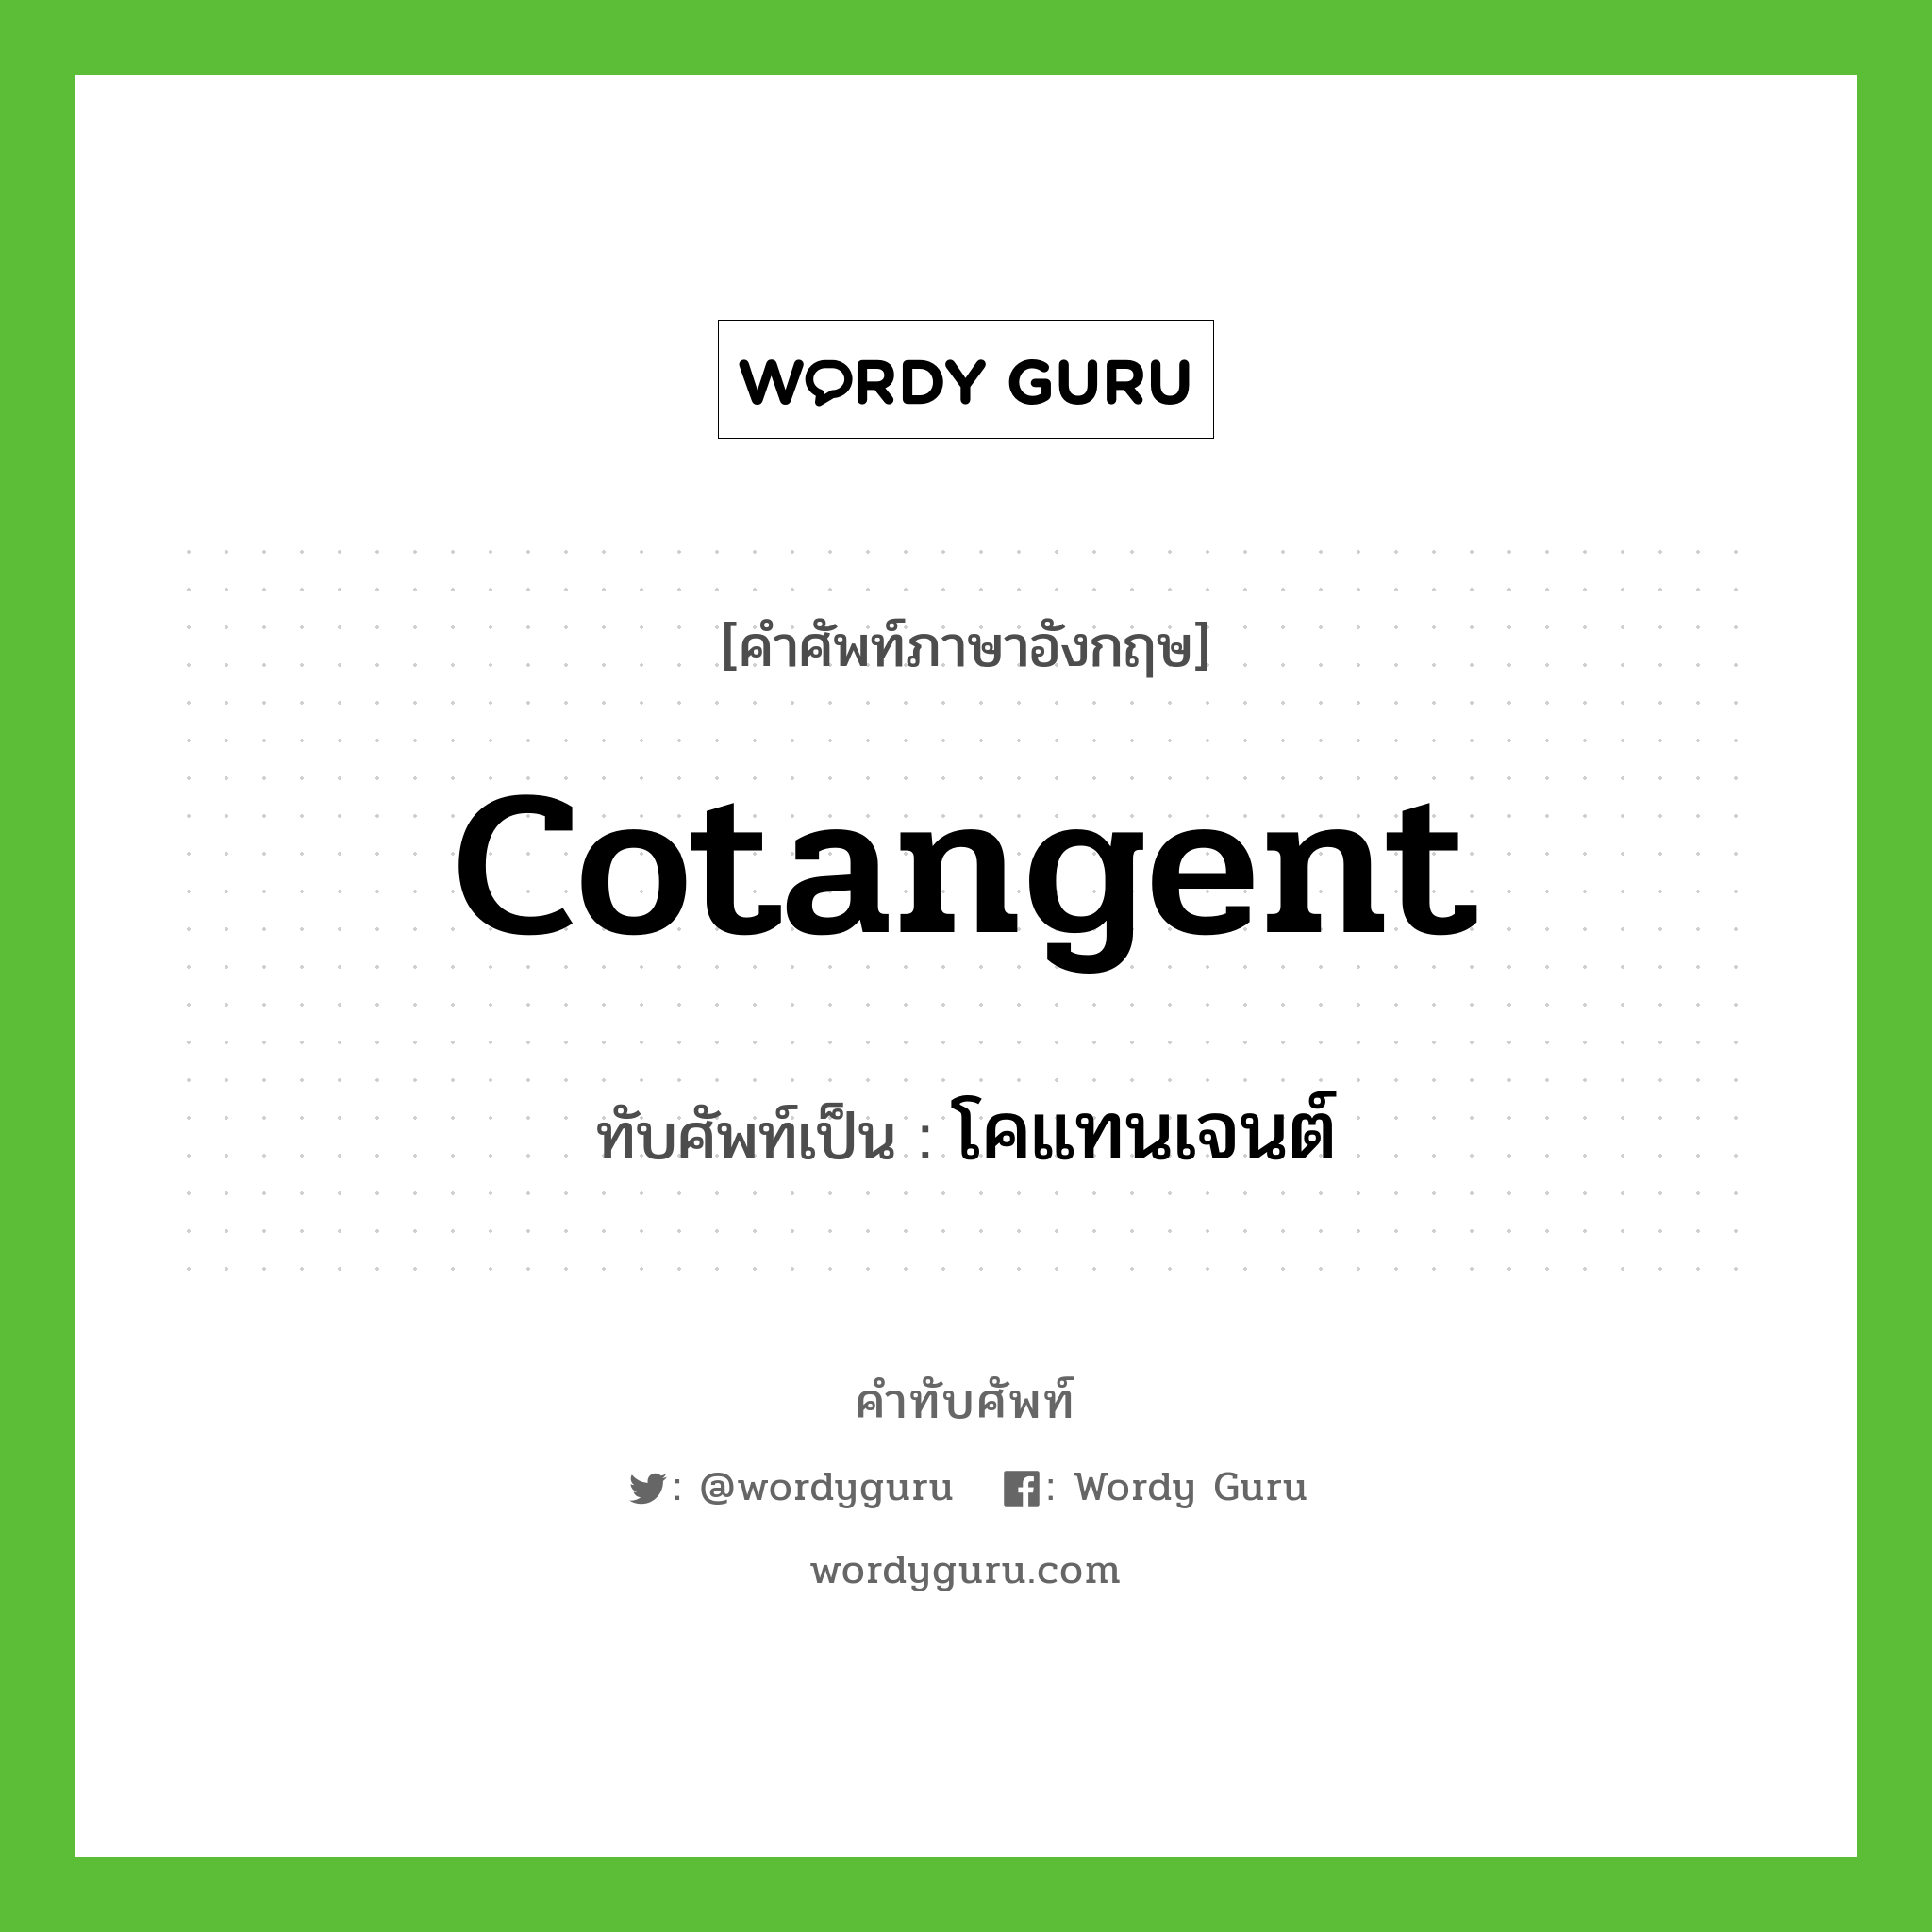 cotangent เขียนเป็นคำไทยว่าอะไร?, คำศัพท์ภาษาอังกฤษ cotangent ทับศัพท์เป็น โคแทนเจนต์